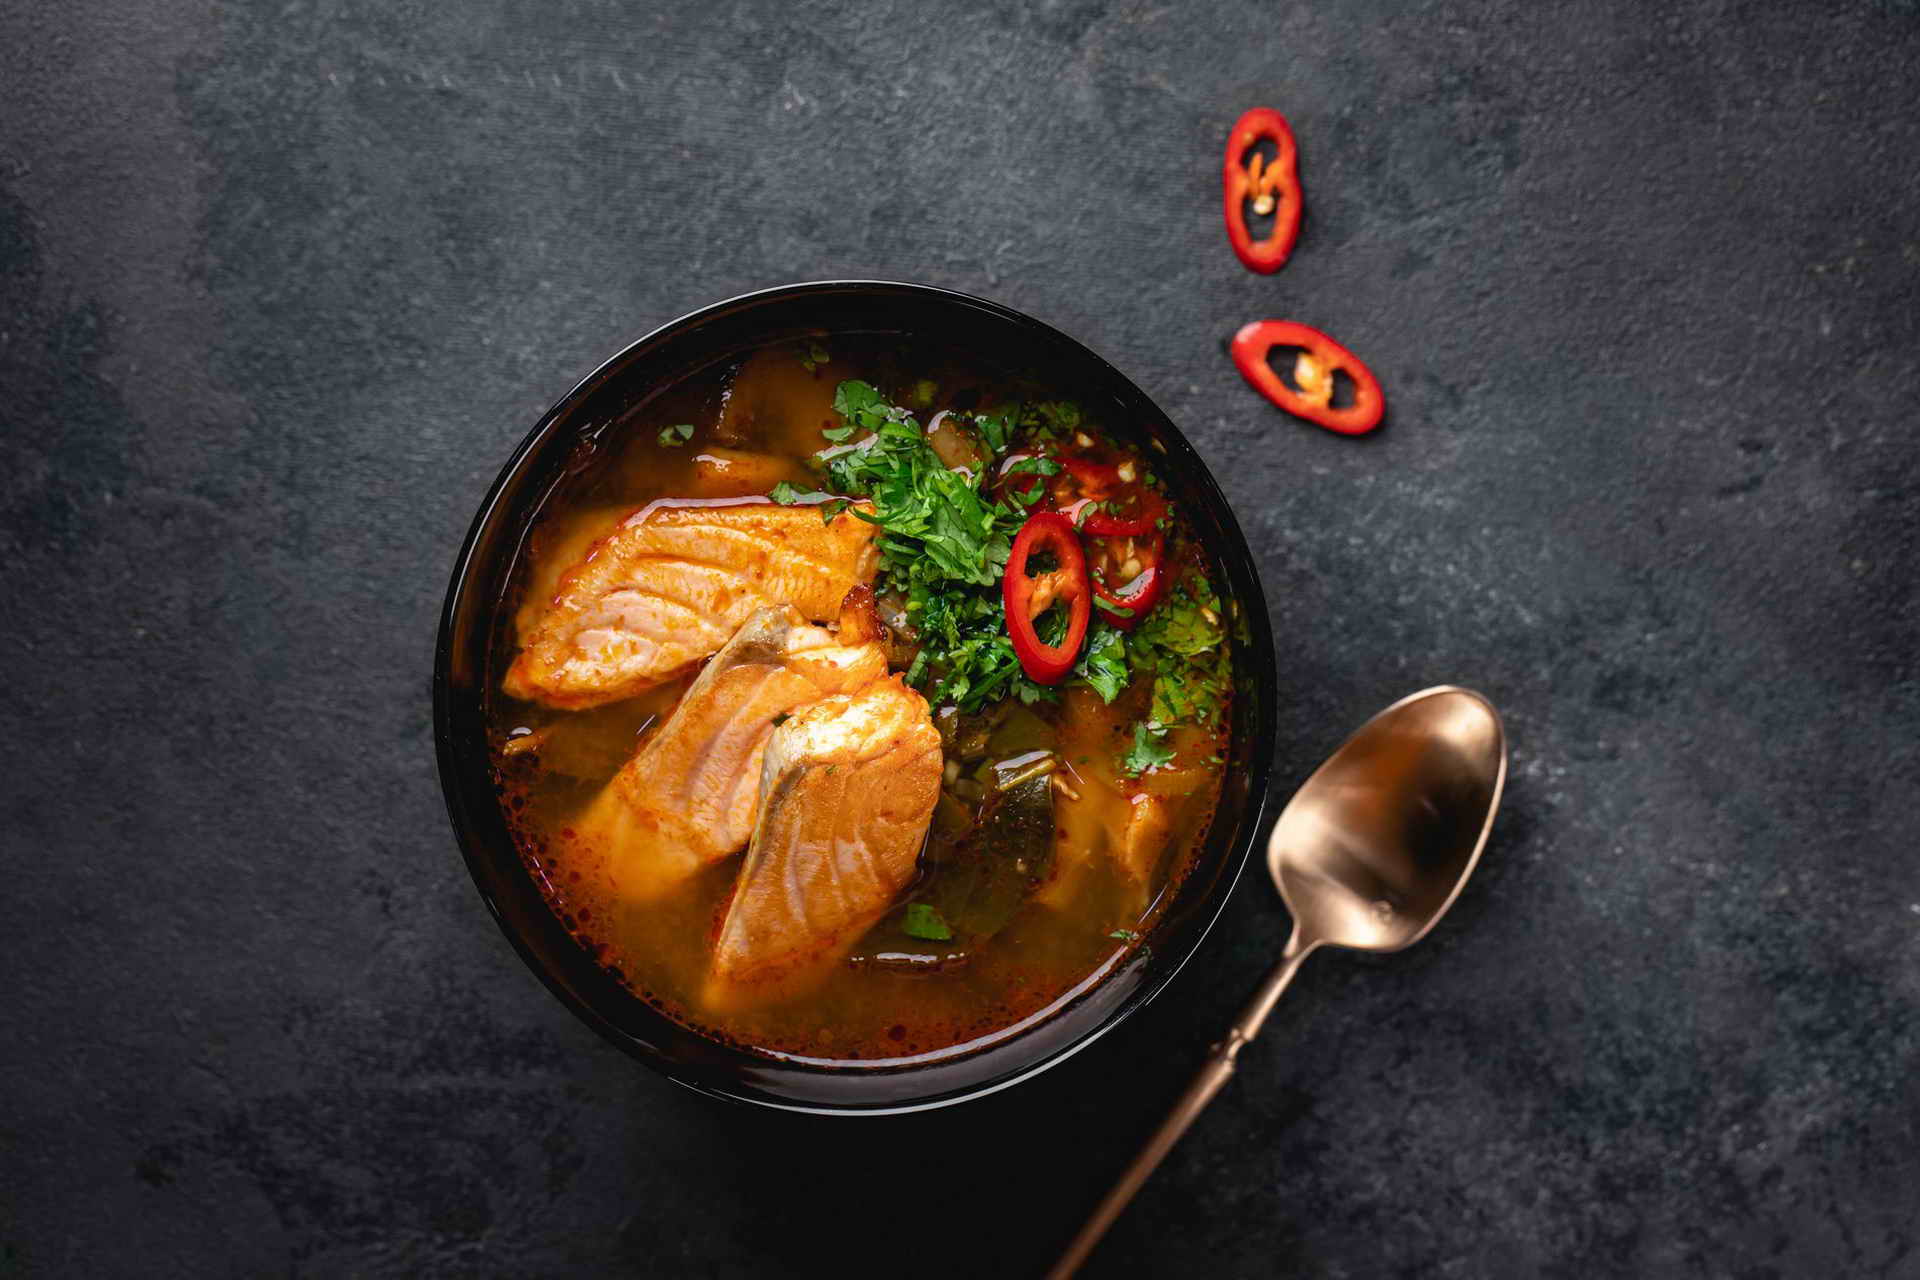 Вы можете попробовать классический суп Том Ям с креветками или курицей в нашем суши-баре с доставкой по всему Краснодару